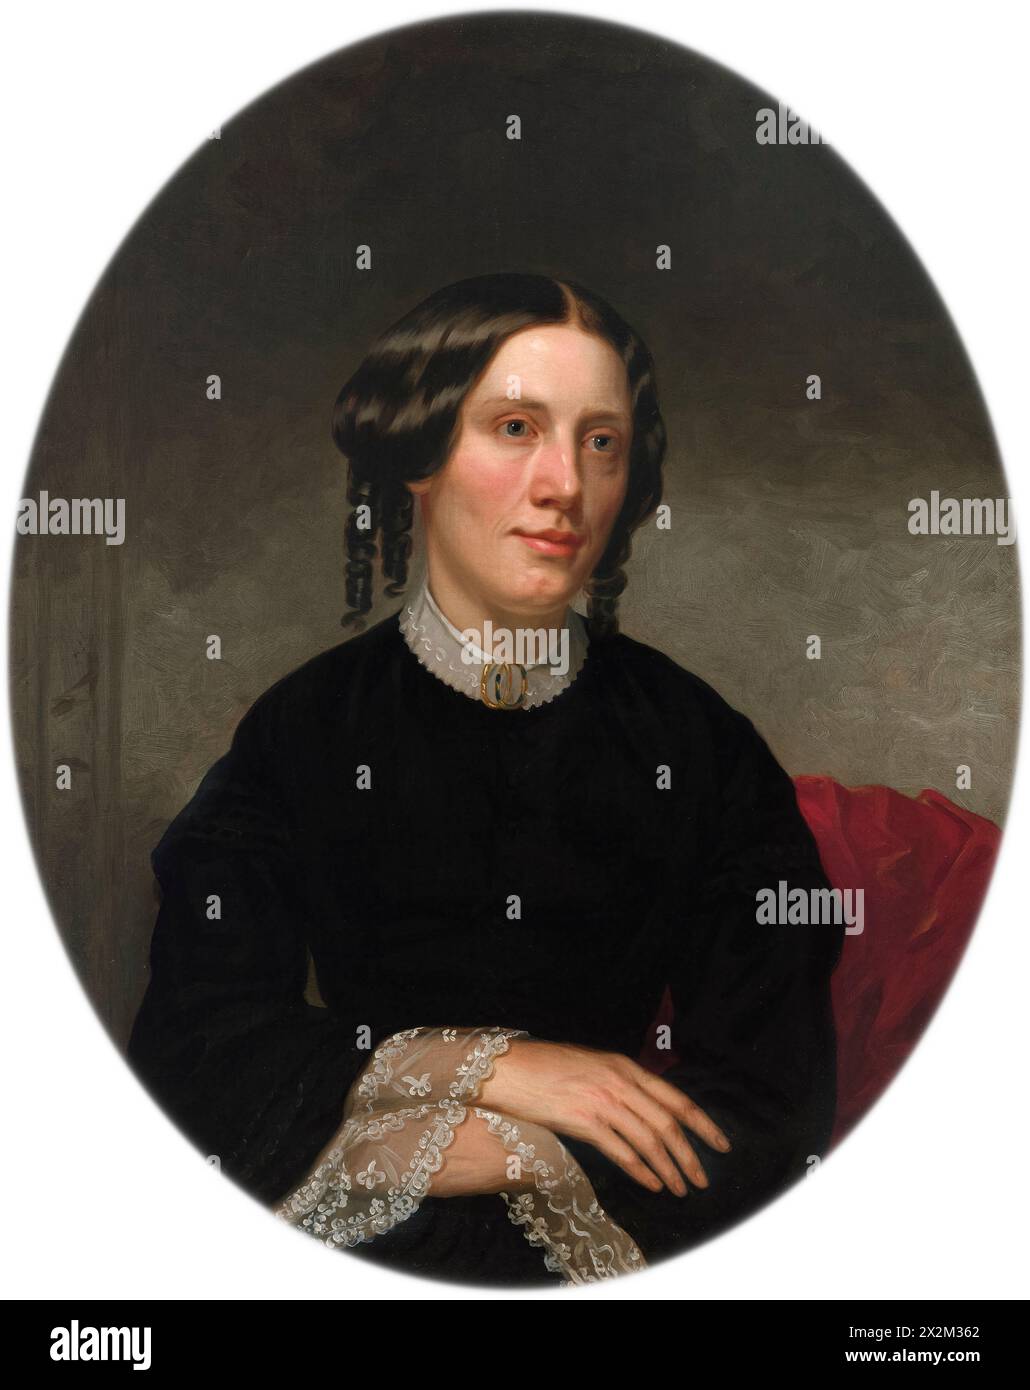 Portrait de Harriet Beecher Stowe par l'artiste américain Alanson Fisher (1807-1884) peint en 1853. Ce portrait a été commandé un an après la publication du roman à succès de Stowe 'la case de l'oncle Tom' qui a fait beaucoup pour faire progresser la cause abolitionniste dans les années 1850 Banque D'Images